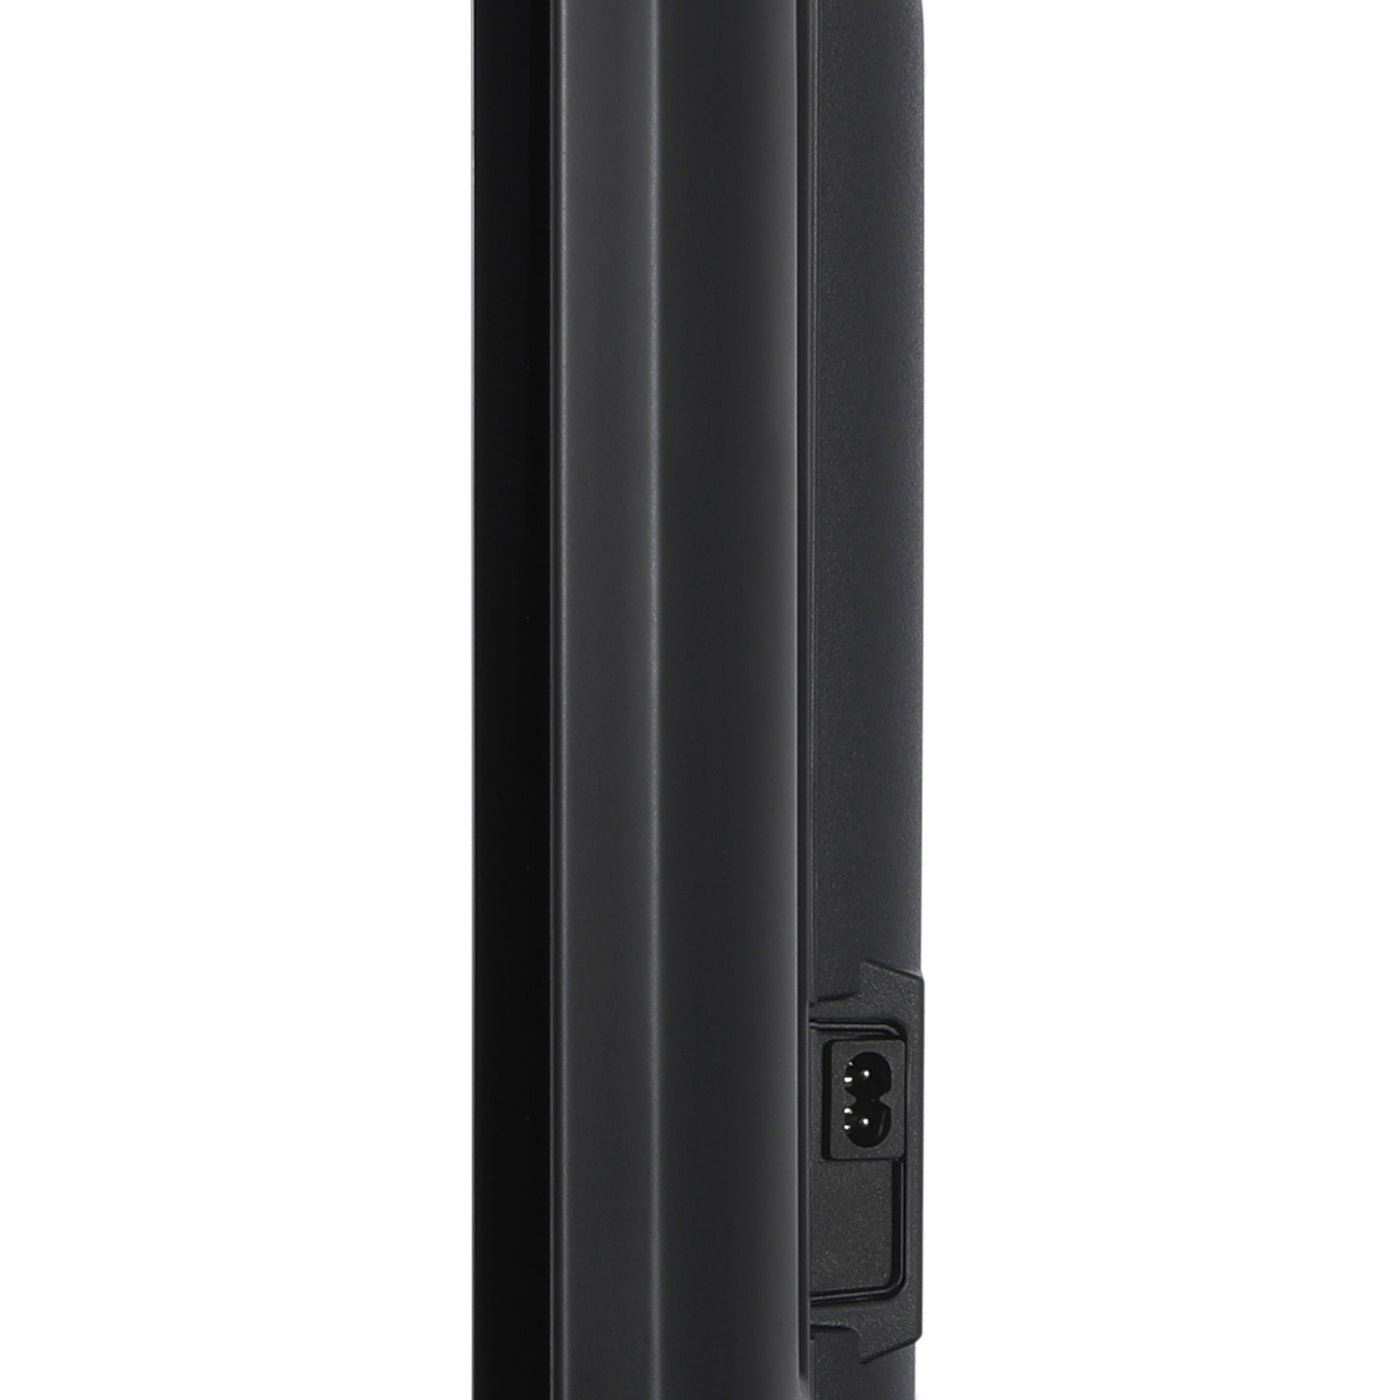 Lenco LED-4353BK - 43" 4K Smart TV Android, noir